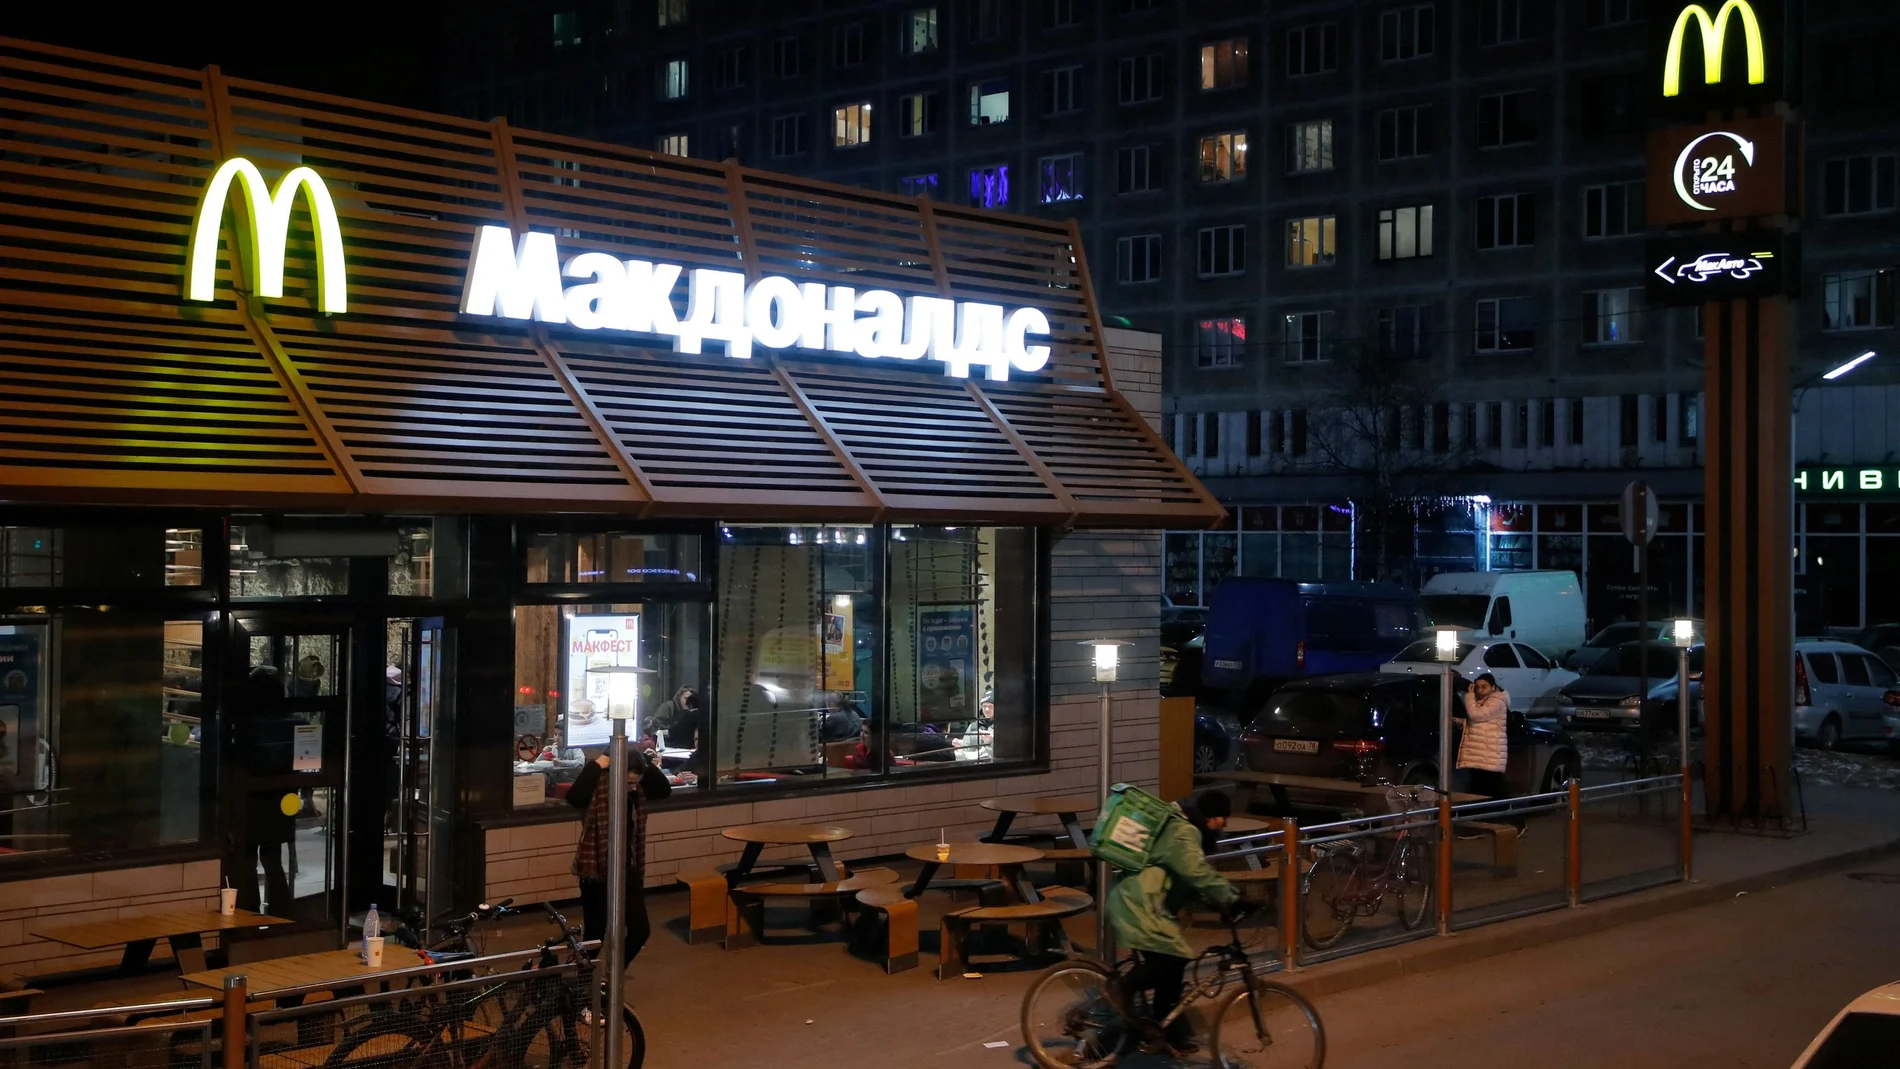 Tras ocho décadas de aislamiento, la apertura de McDonald’s fue la de una ventana al exterior para unos expectantes moscovitas ávidos de libertad